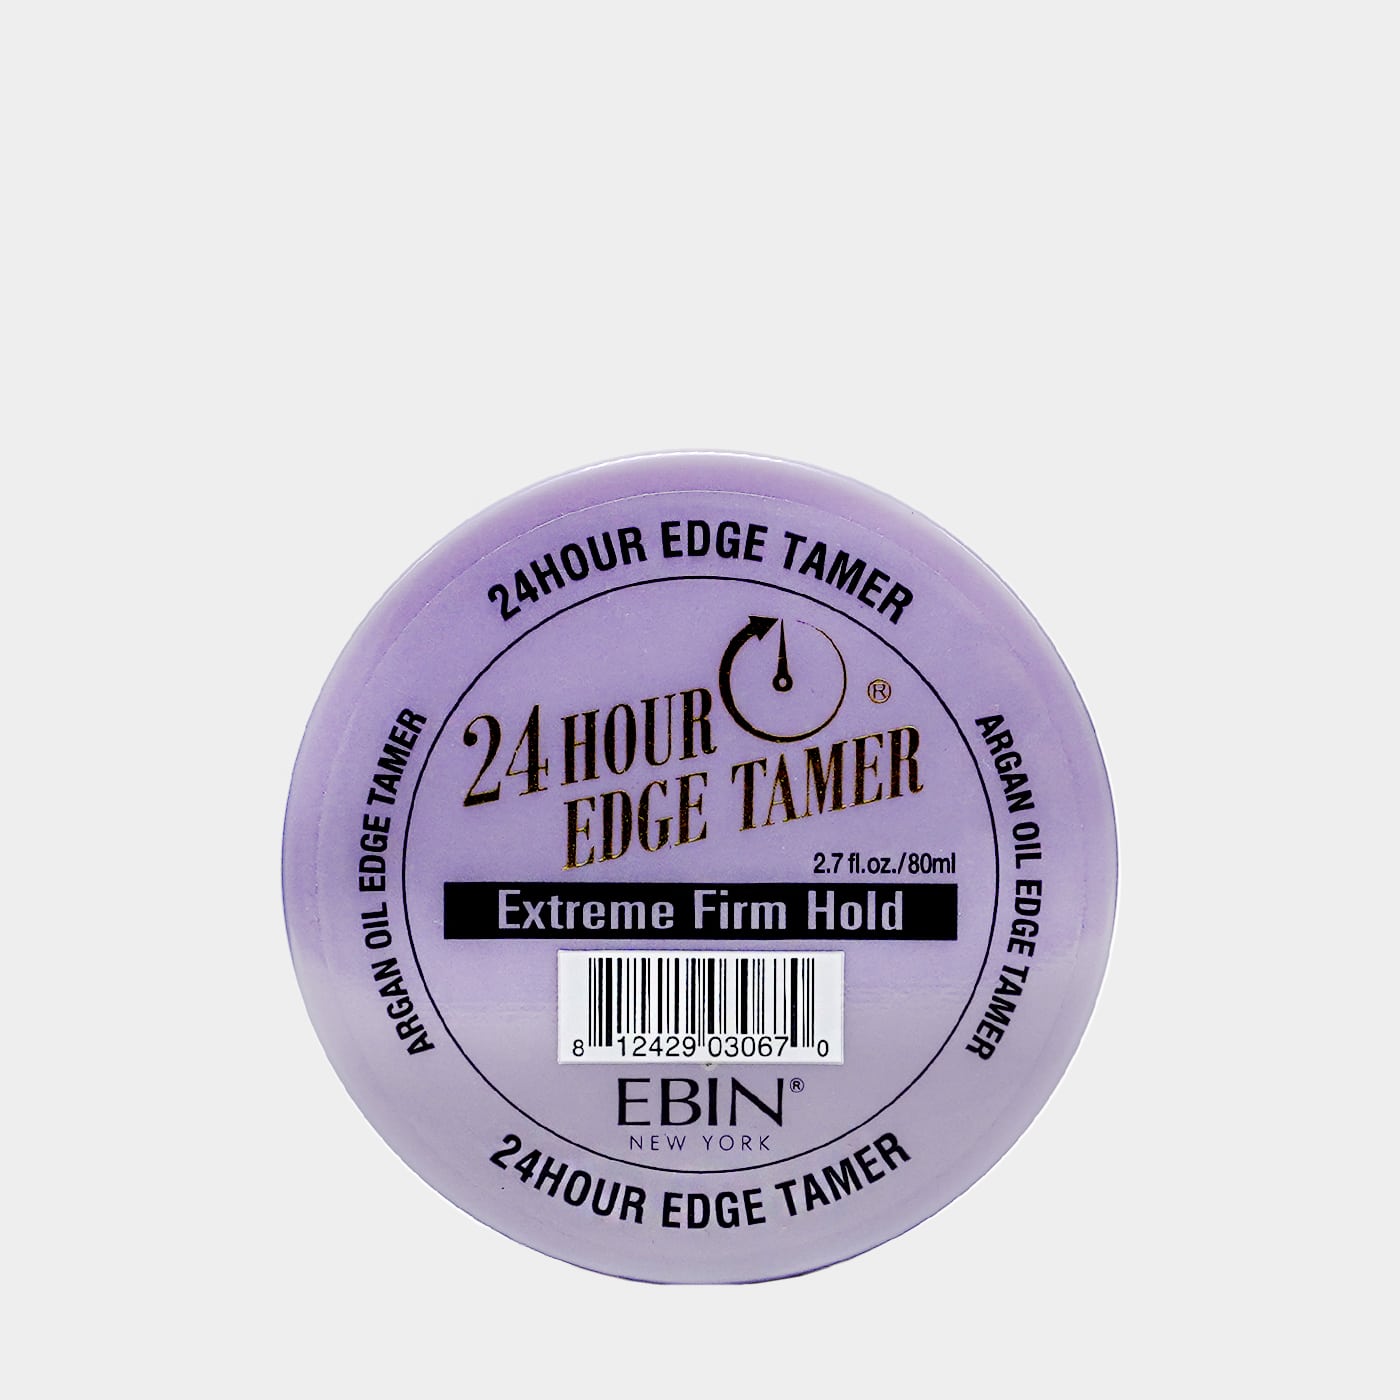 EBIN New York 24 HOUR EDGE TAMER - EXTREME FIRM HOLD Argan Oil 2.7fl. oz